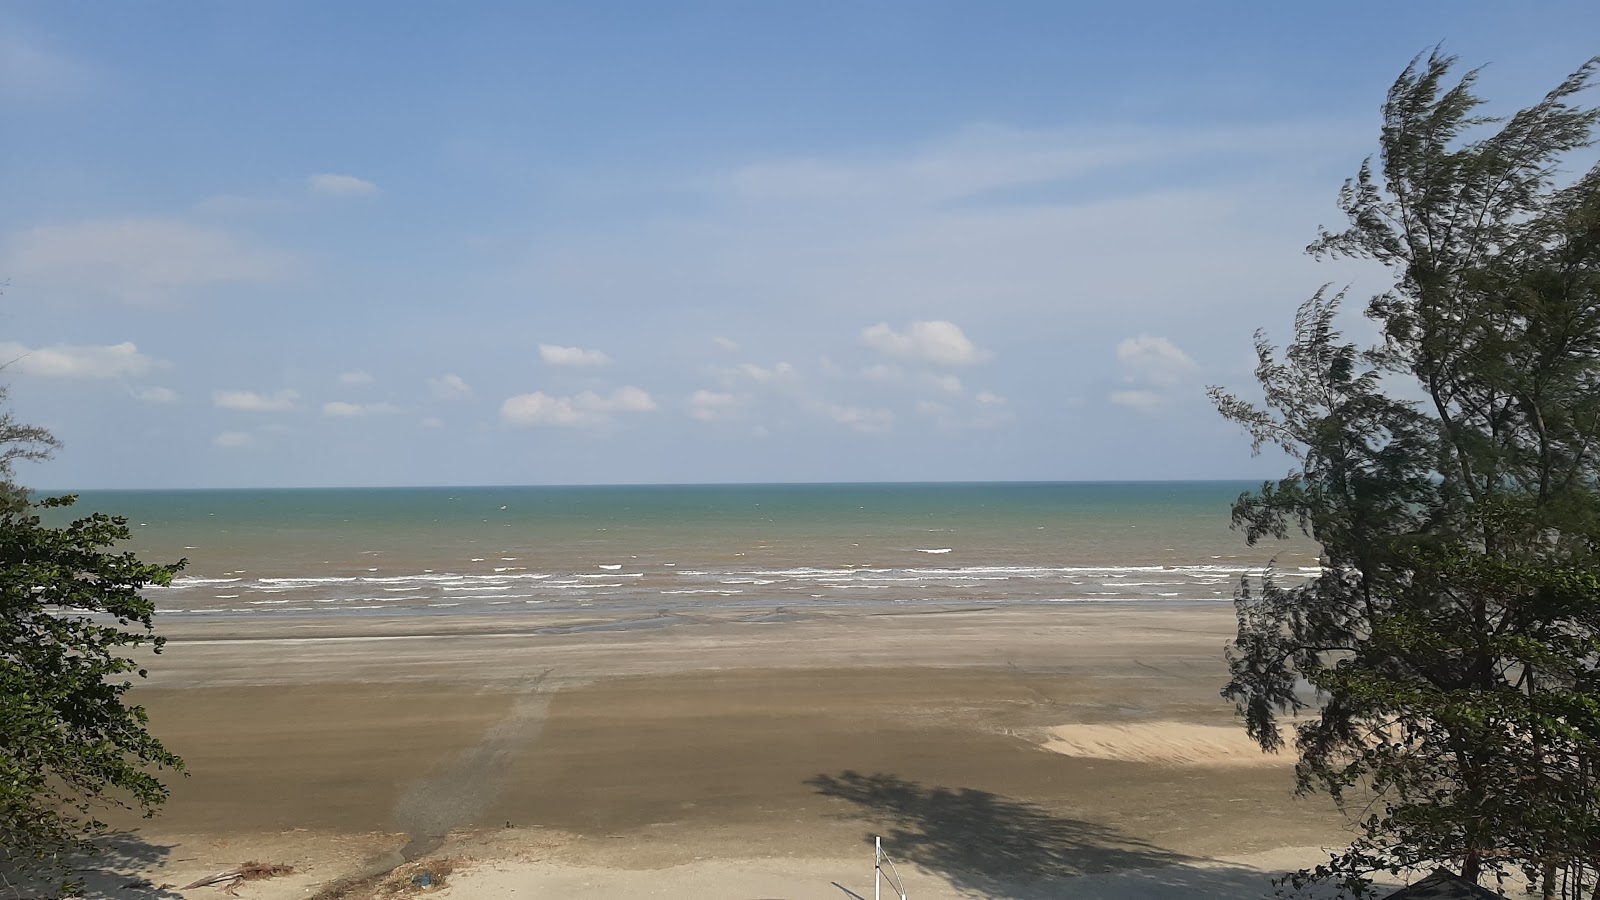 Fotografie cu Batu Hitam Mandurah Beach - locul popular printre cunoscătorii de relaxare